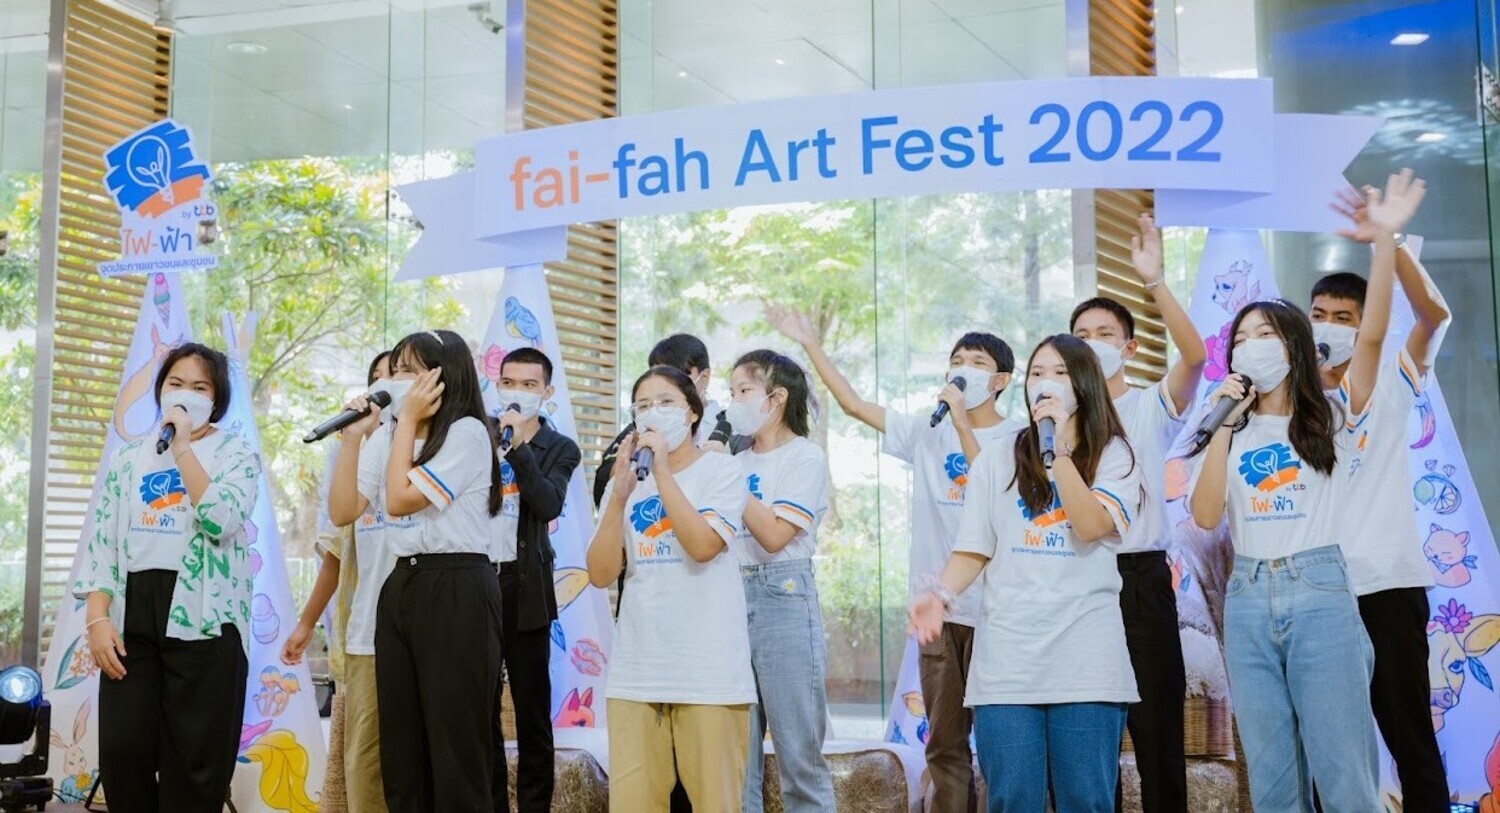 fai-fah Art Fest 2022 พื้นที่โชว์เคสไอเดียสร้างสรรค์ของเด็กไฟ-ฟ้า จุดประกายเยาวชนเพื่อค้นพบและพัฒนาศักยภาพของตนเอง พร้อมส่งพลังแห่งการให้กลับคืนสู่สังคมอย่างยั่งยืน